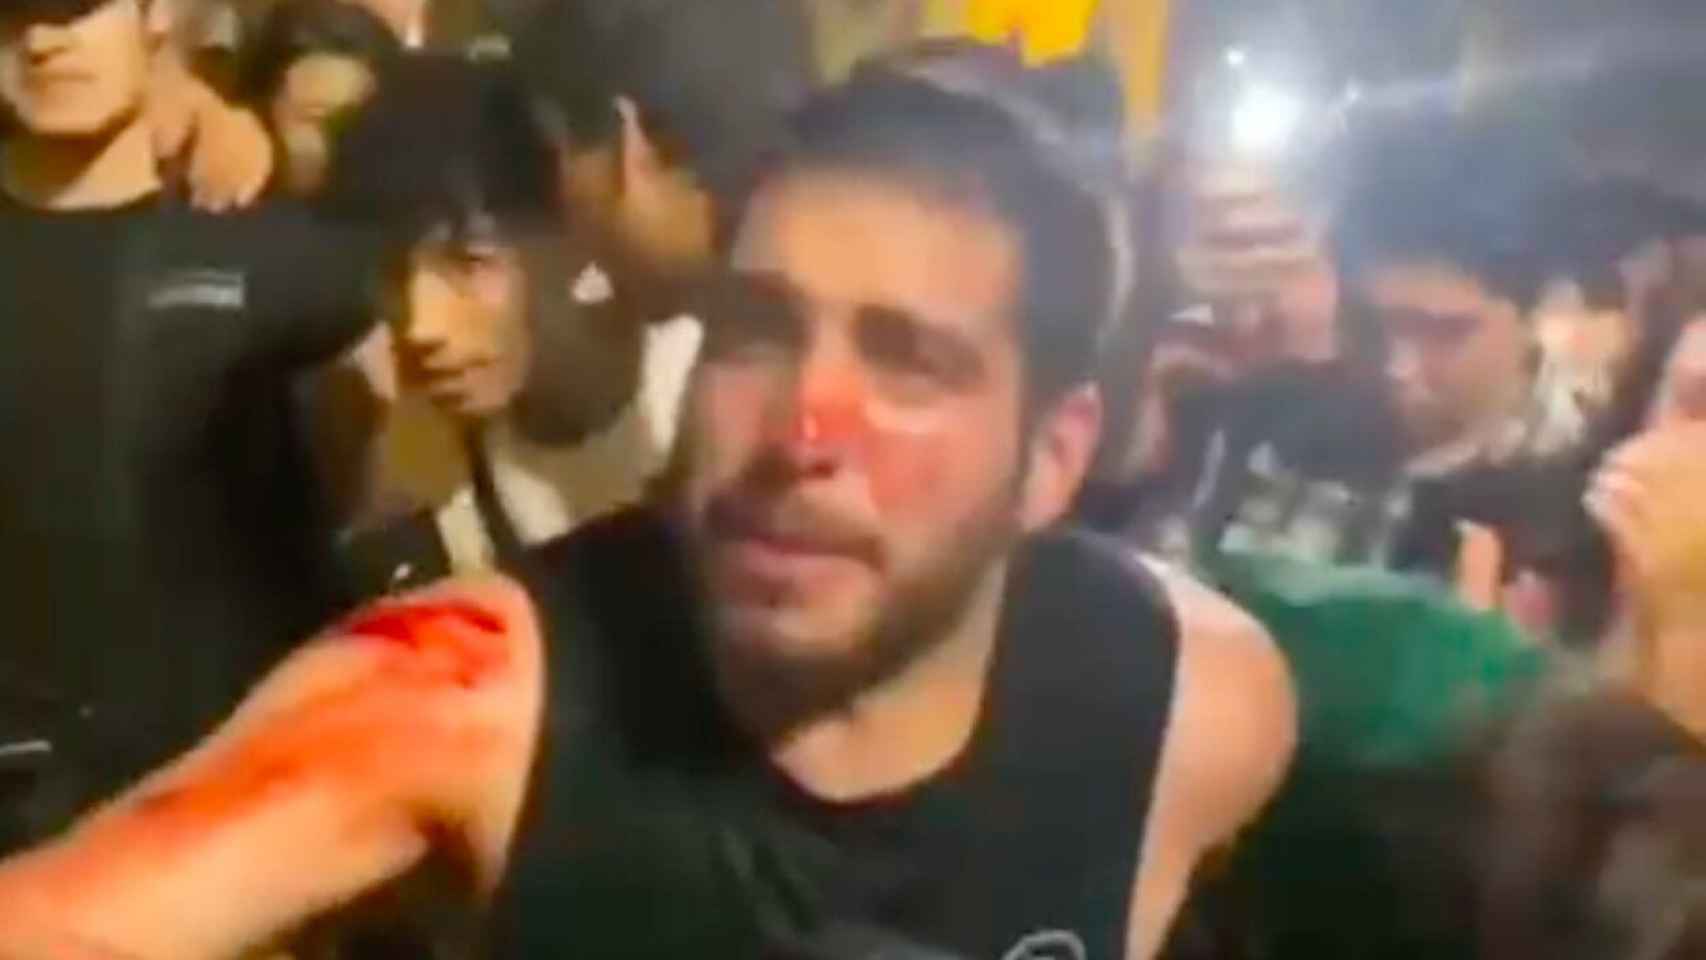 Un joven sangra en una pelea por diversión en Barcelona / 'BCN LEGENDS' - TELEGRAM